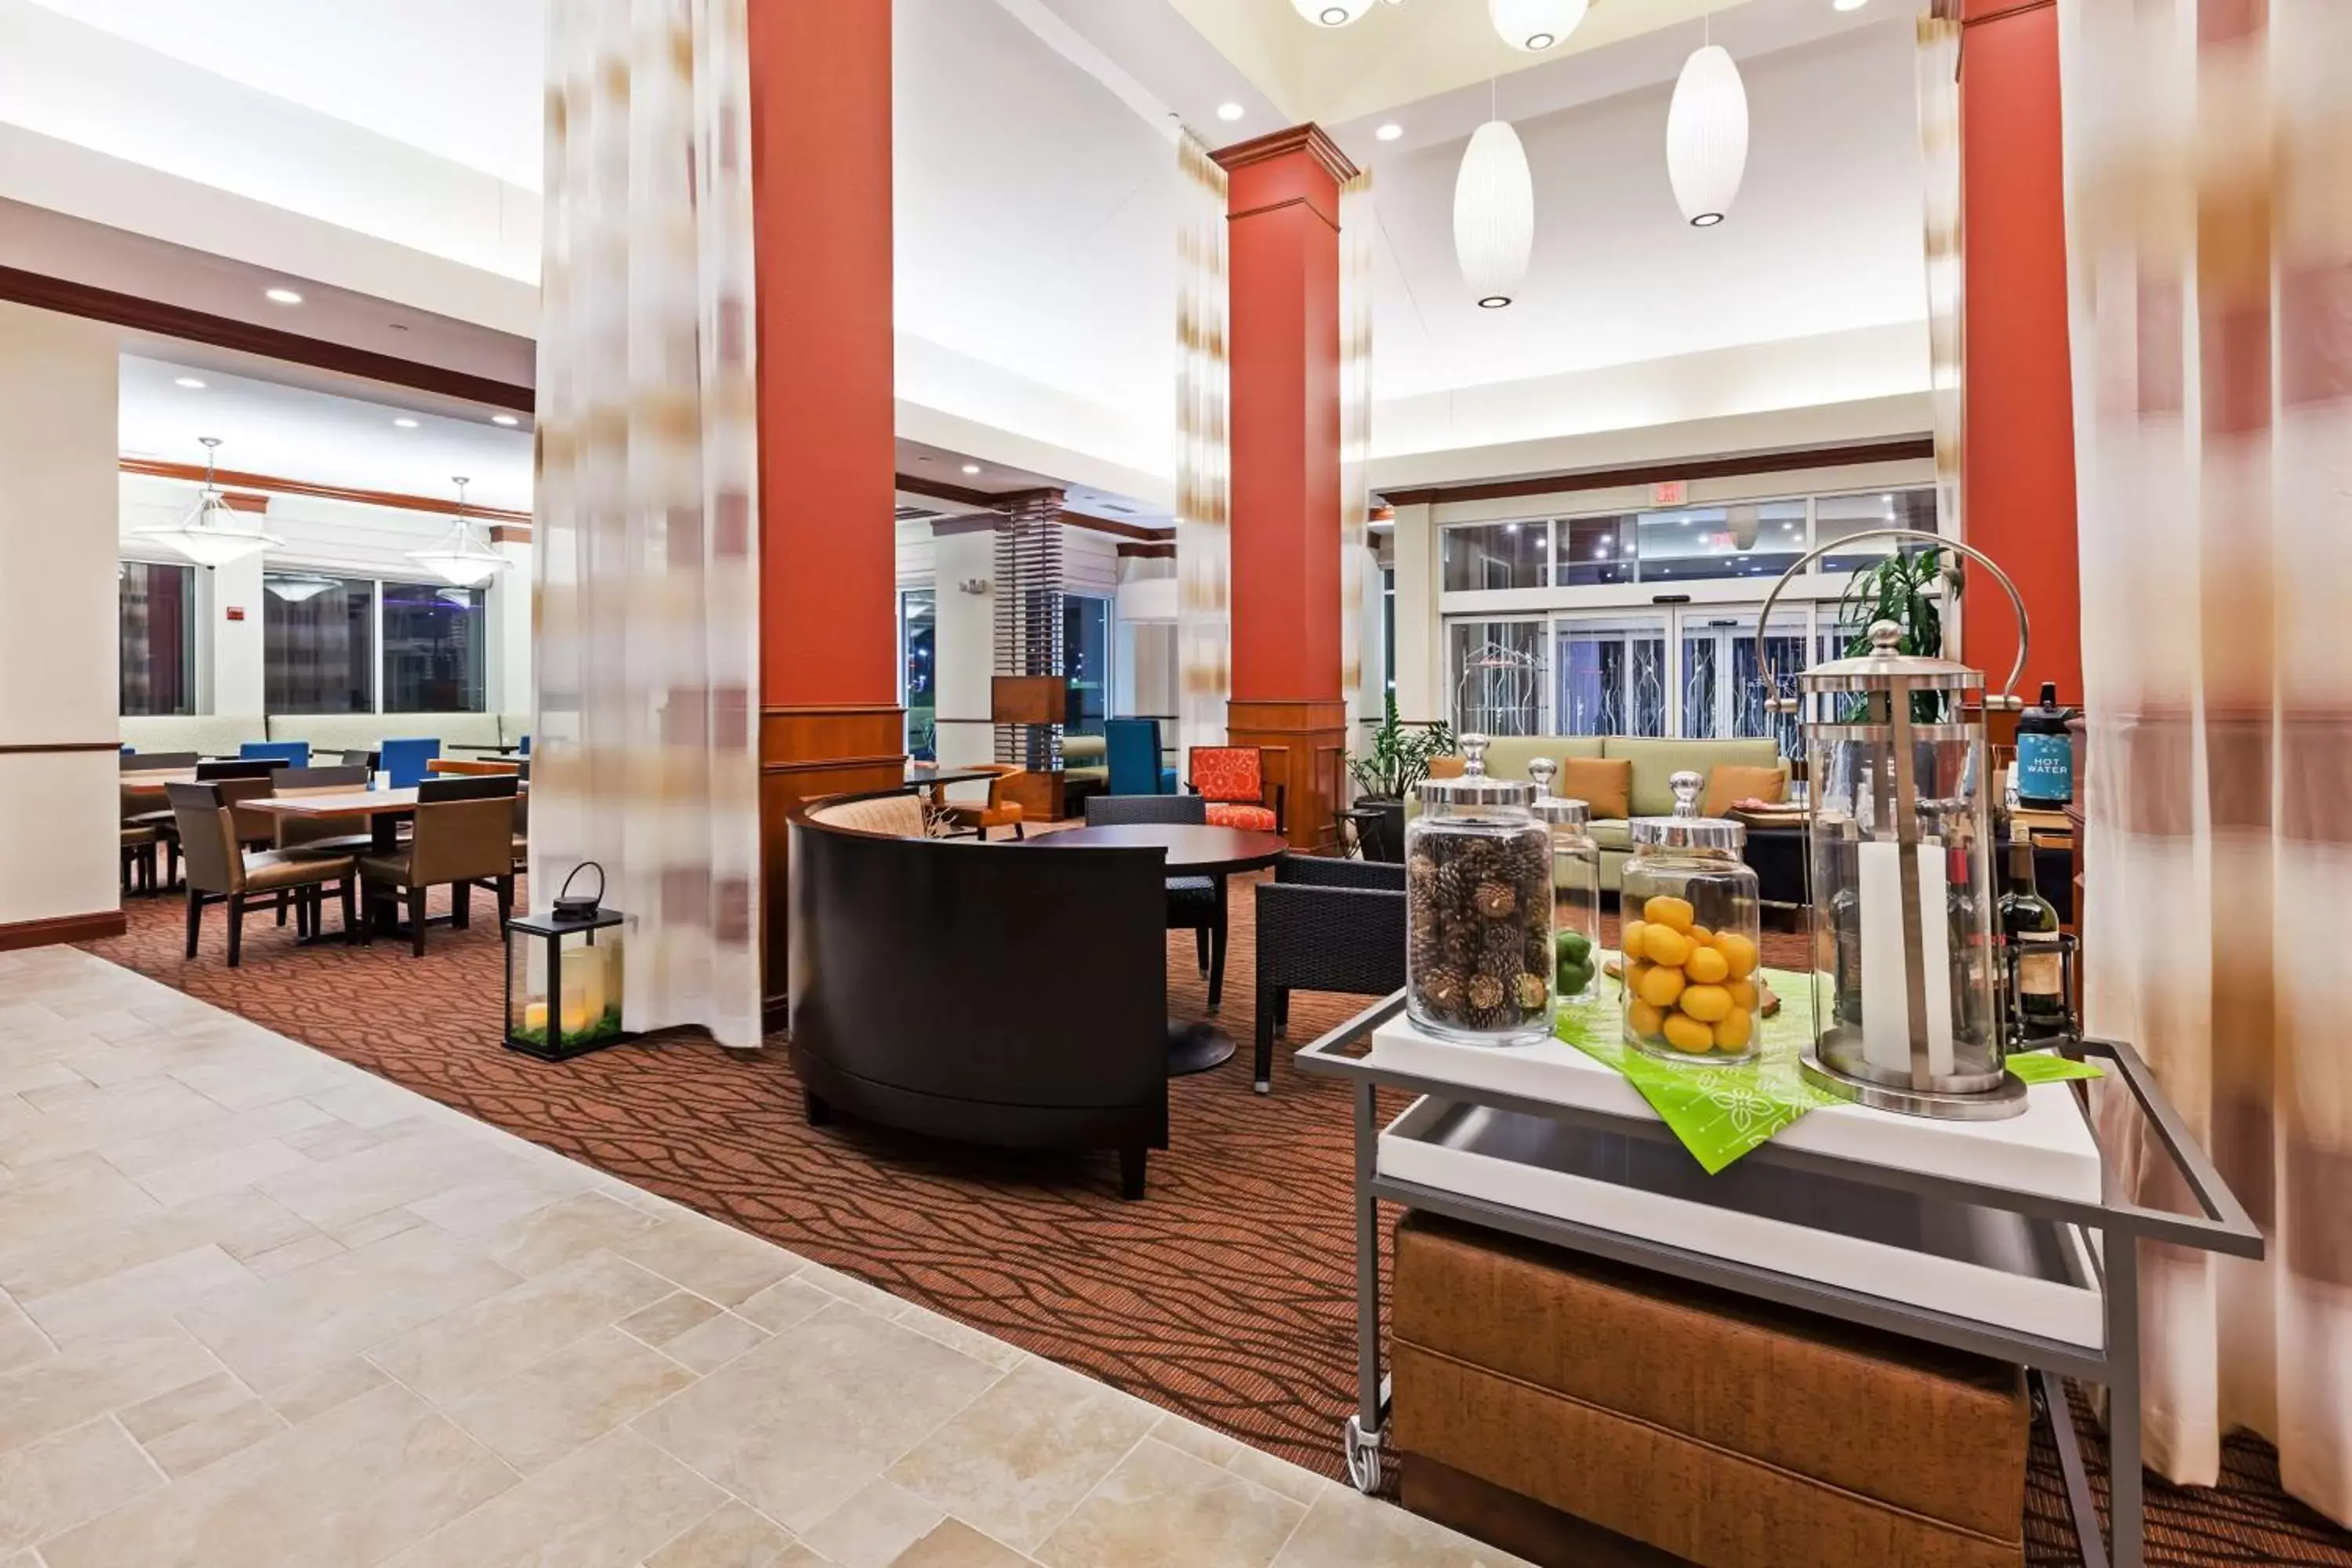 Lobby or reception, Restaurant/Places to Eat in Hilton Garden Inn Corpus Christi